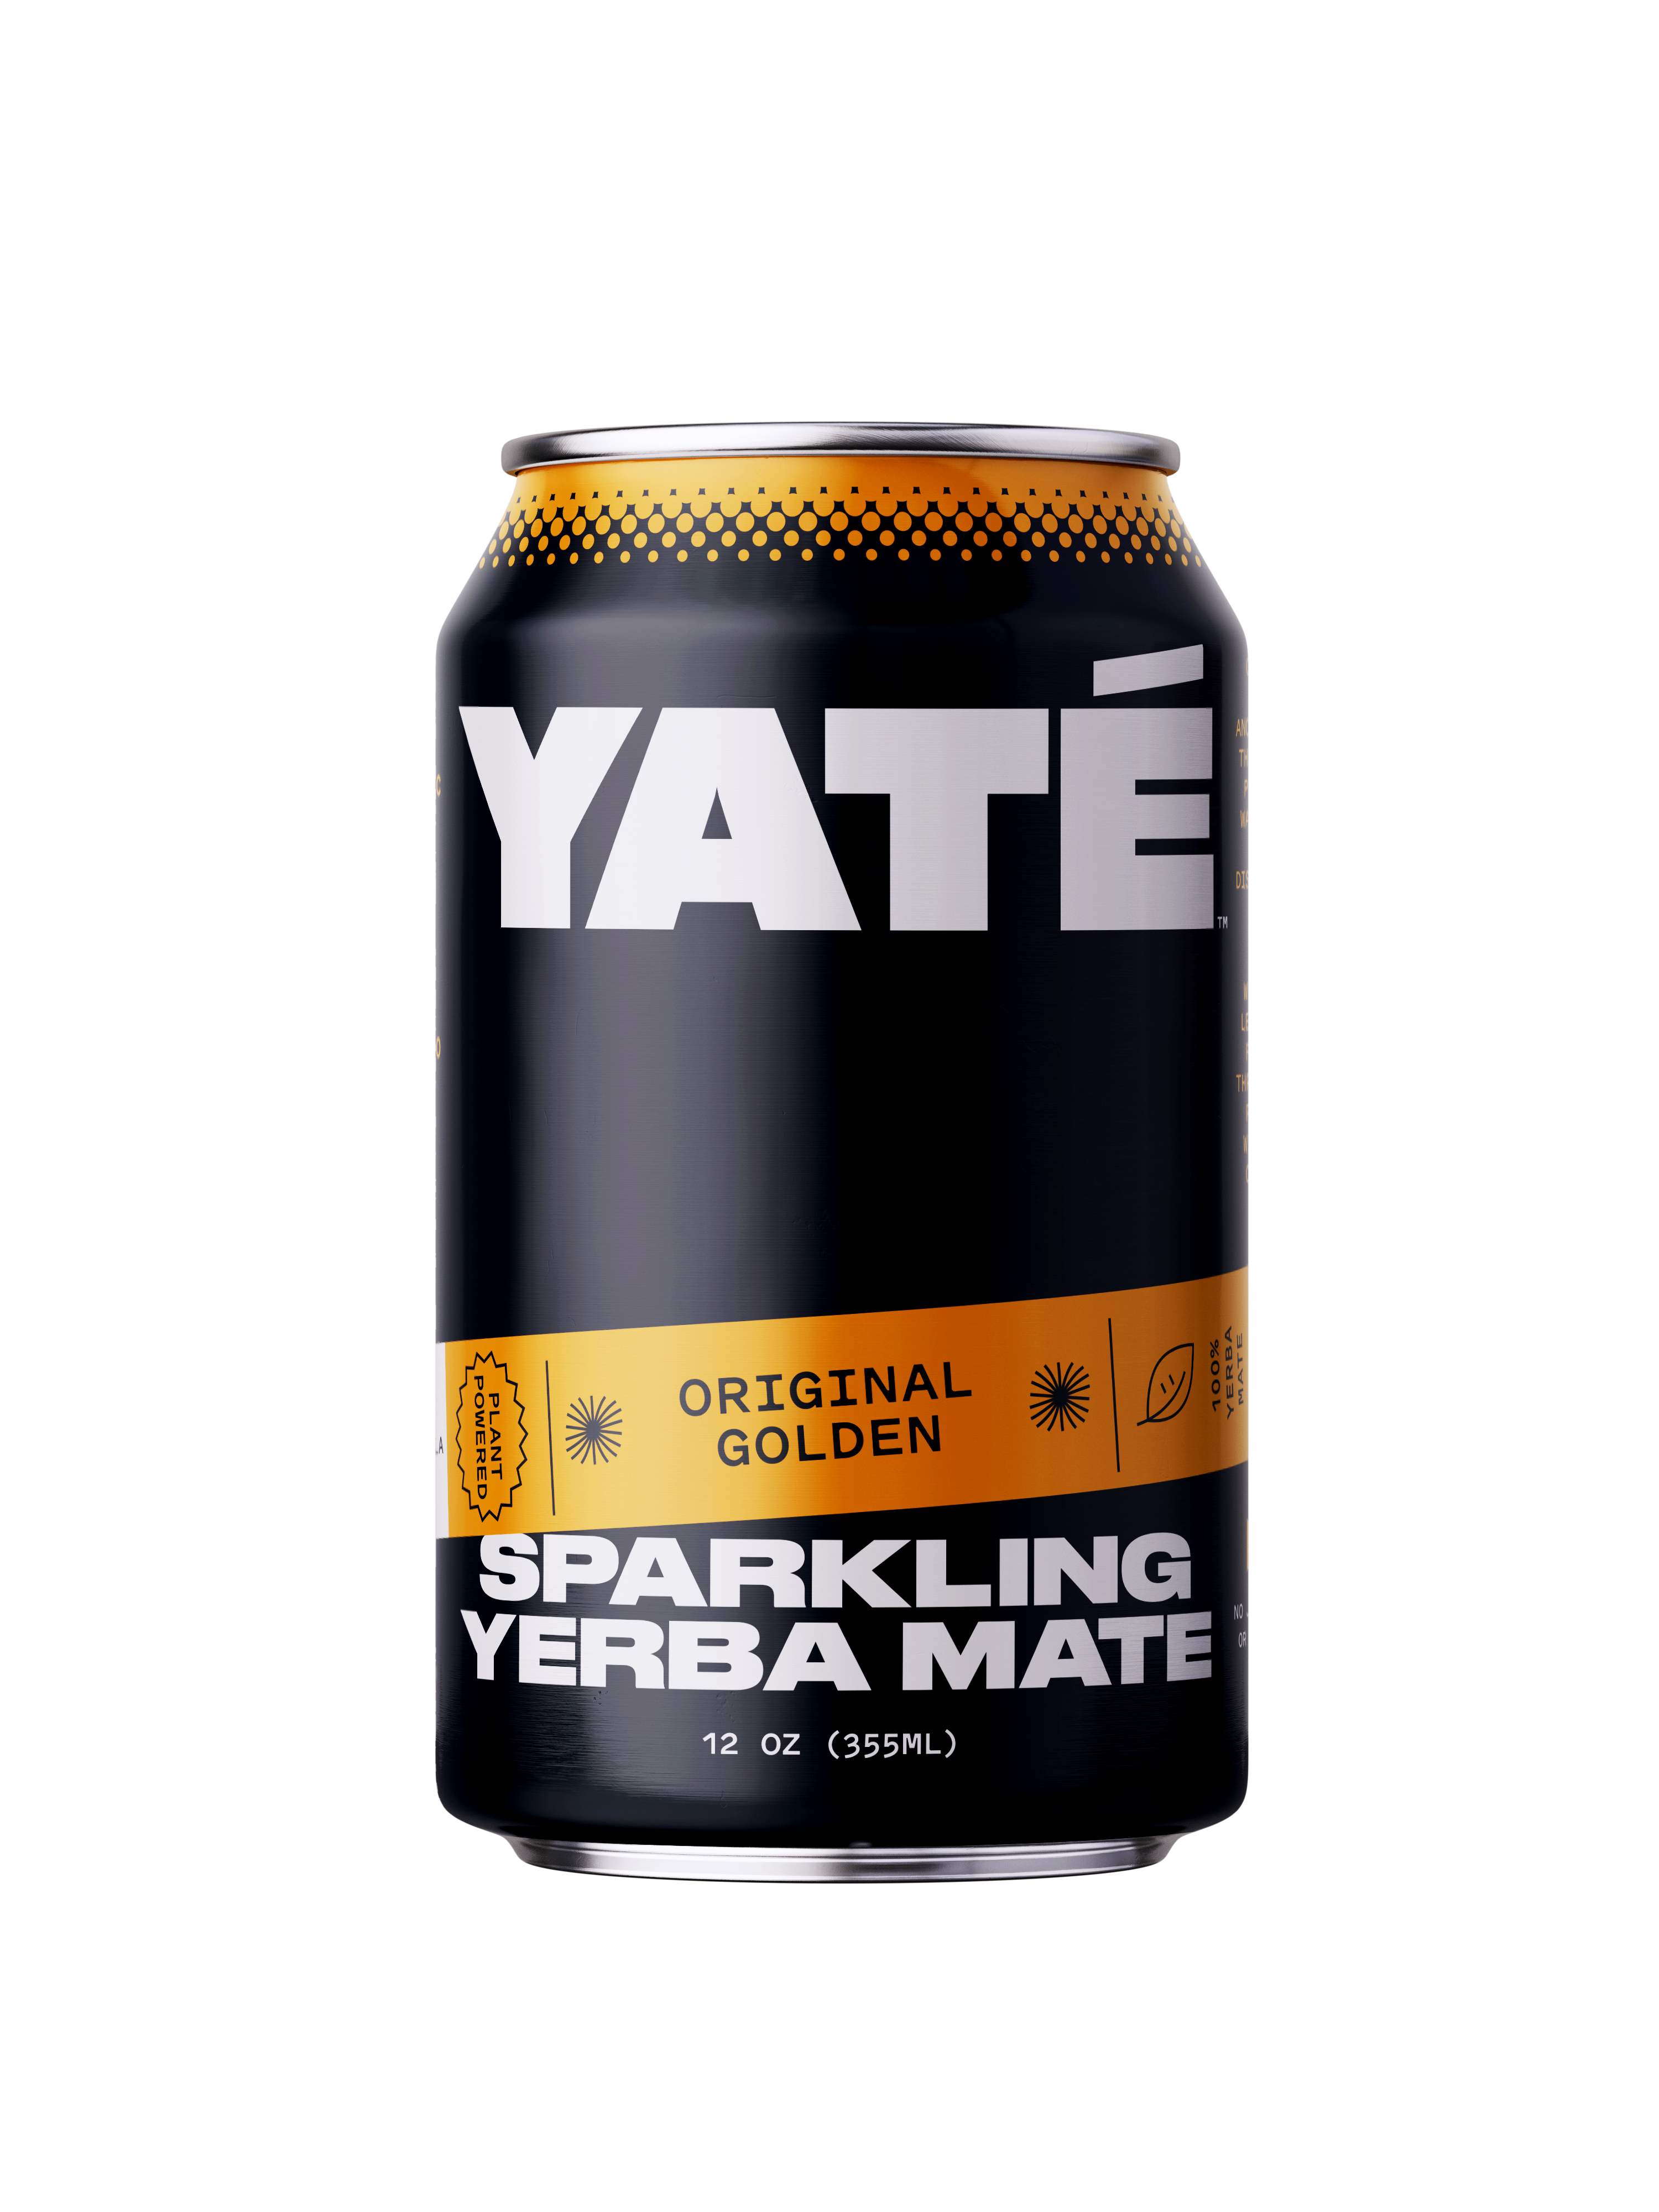 Yate Yerba Mate Original Golden Flavor 12oz Can